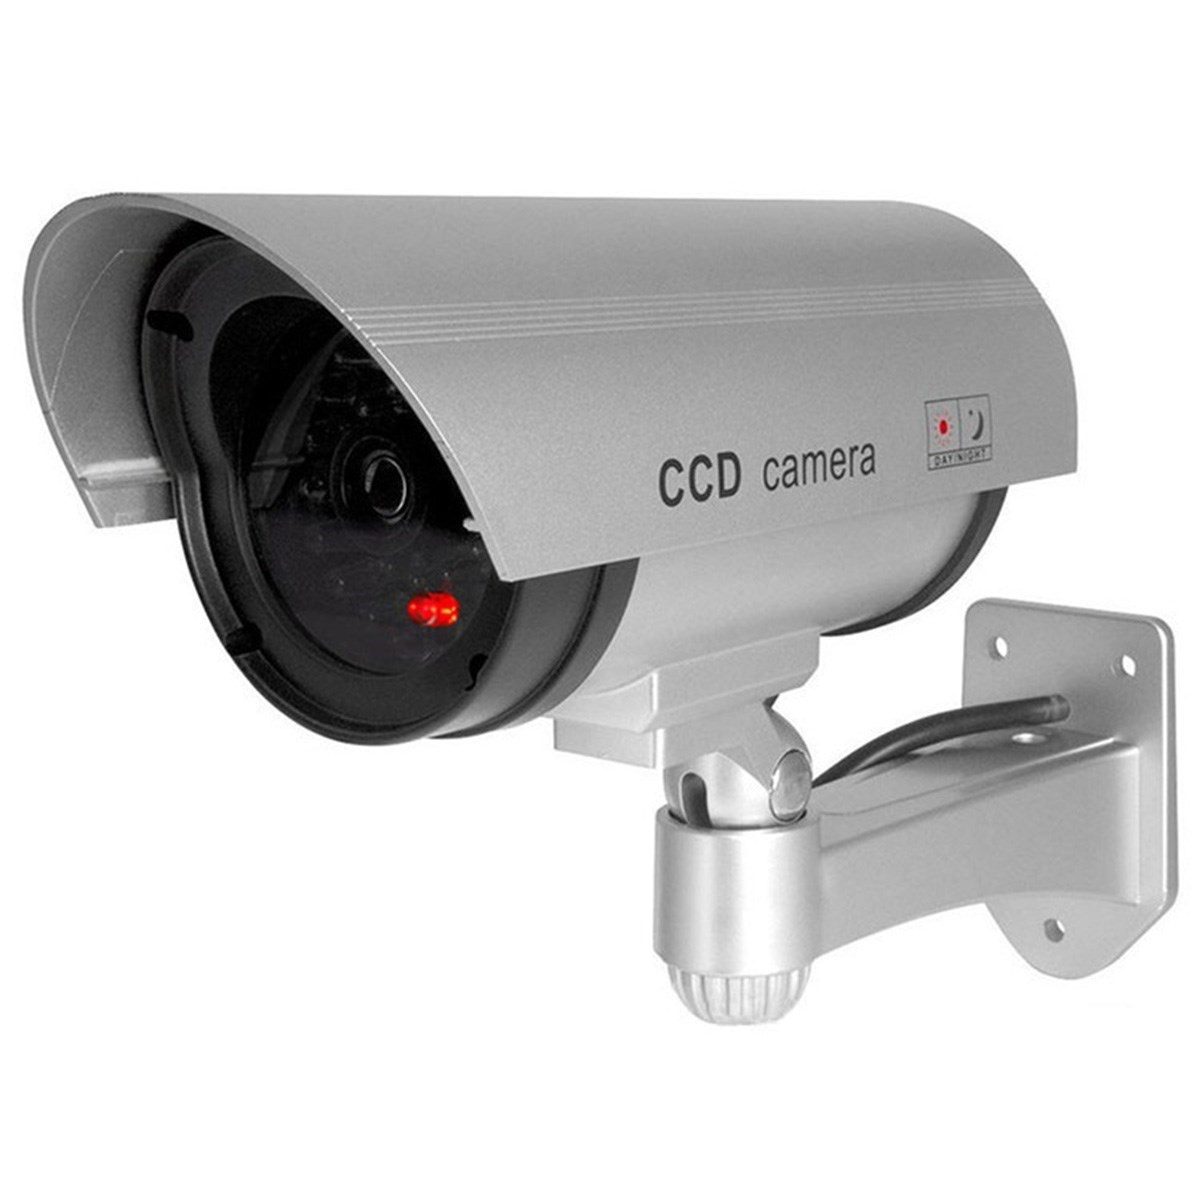 %100 Gerçekçi İç Ve Dış Mekan İçin Sahte Güvenlik Kamerası (4172)